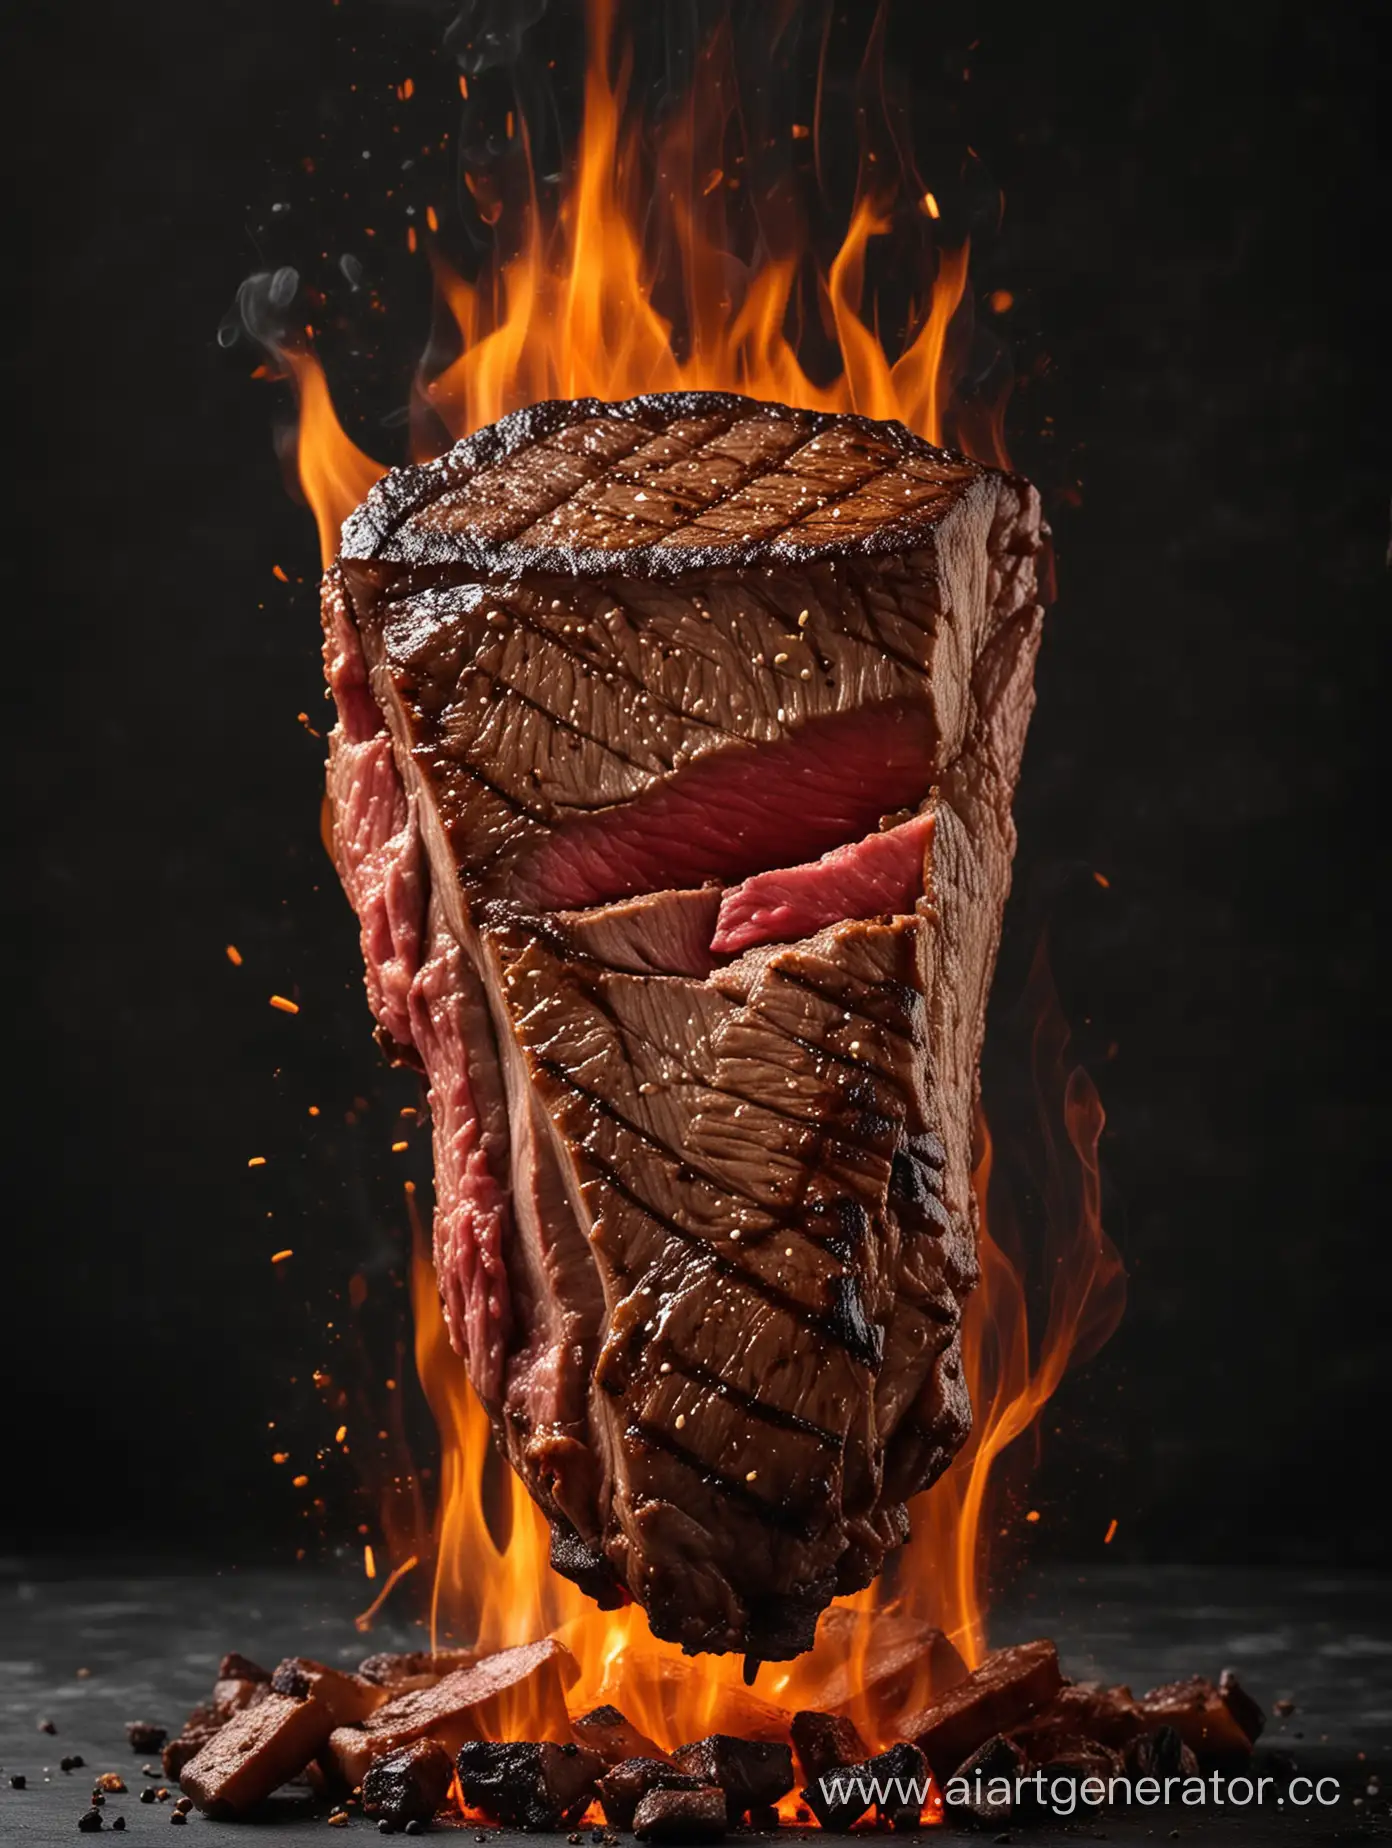 steak on fire on a dark background
